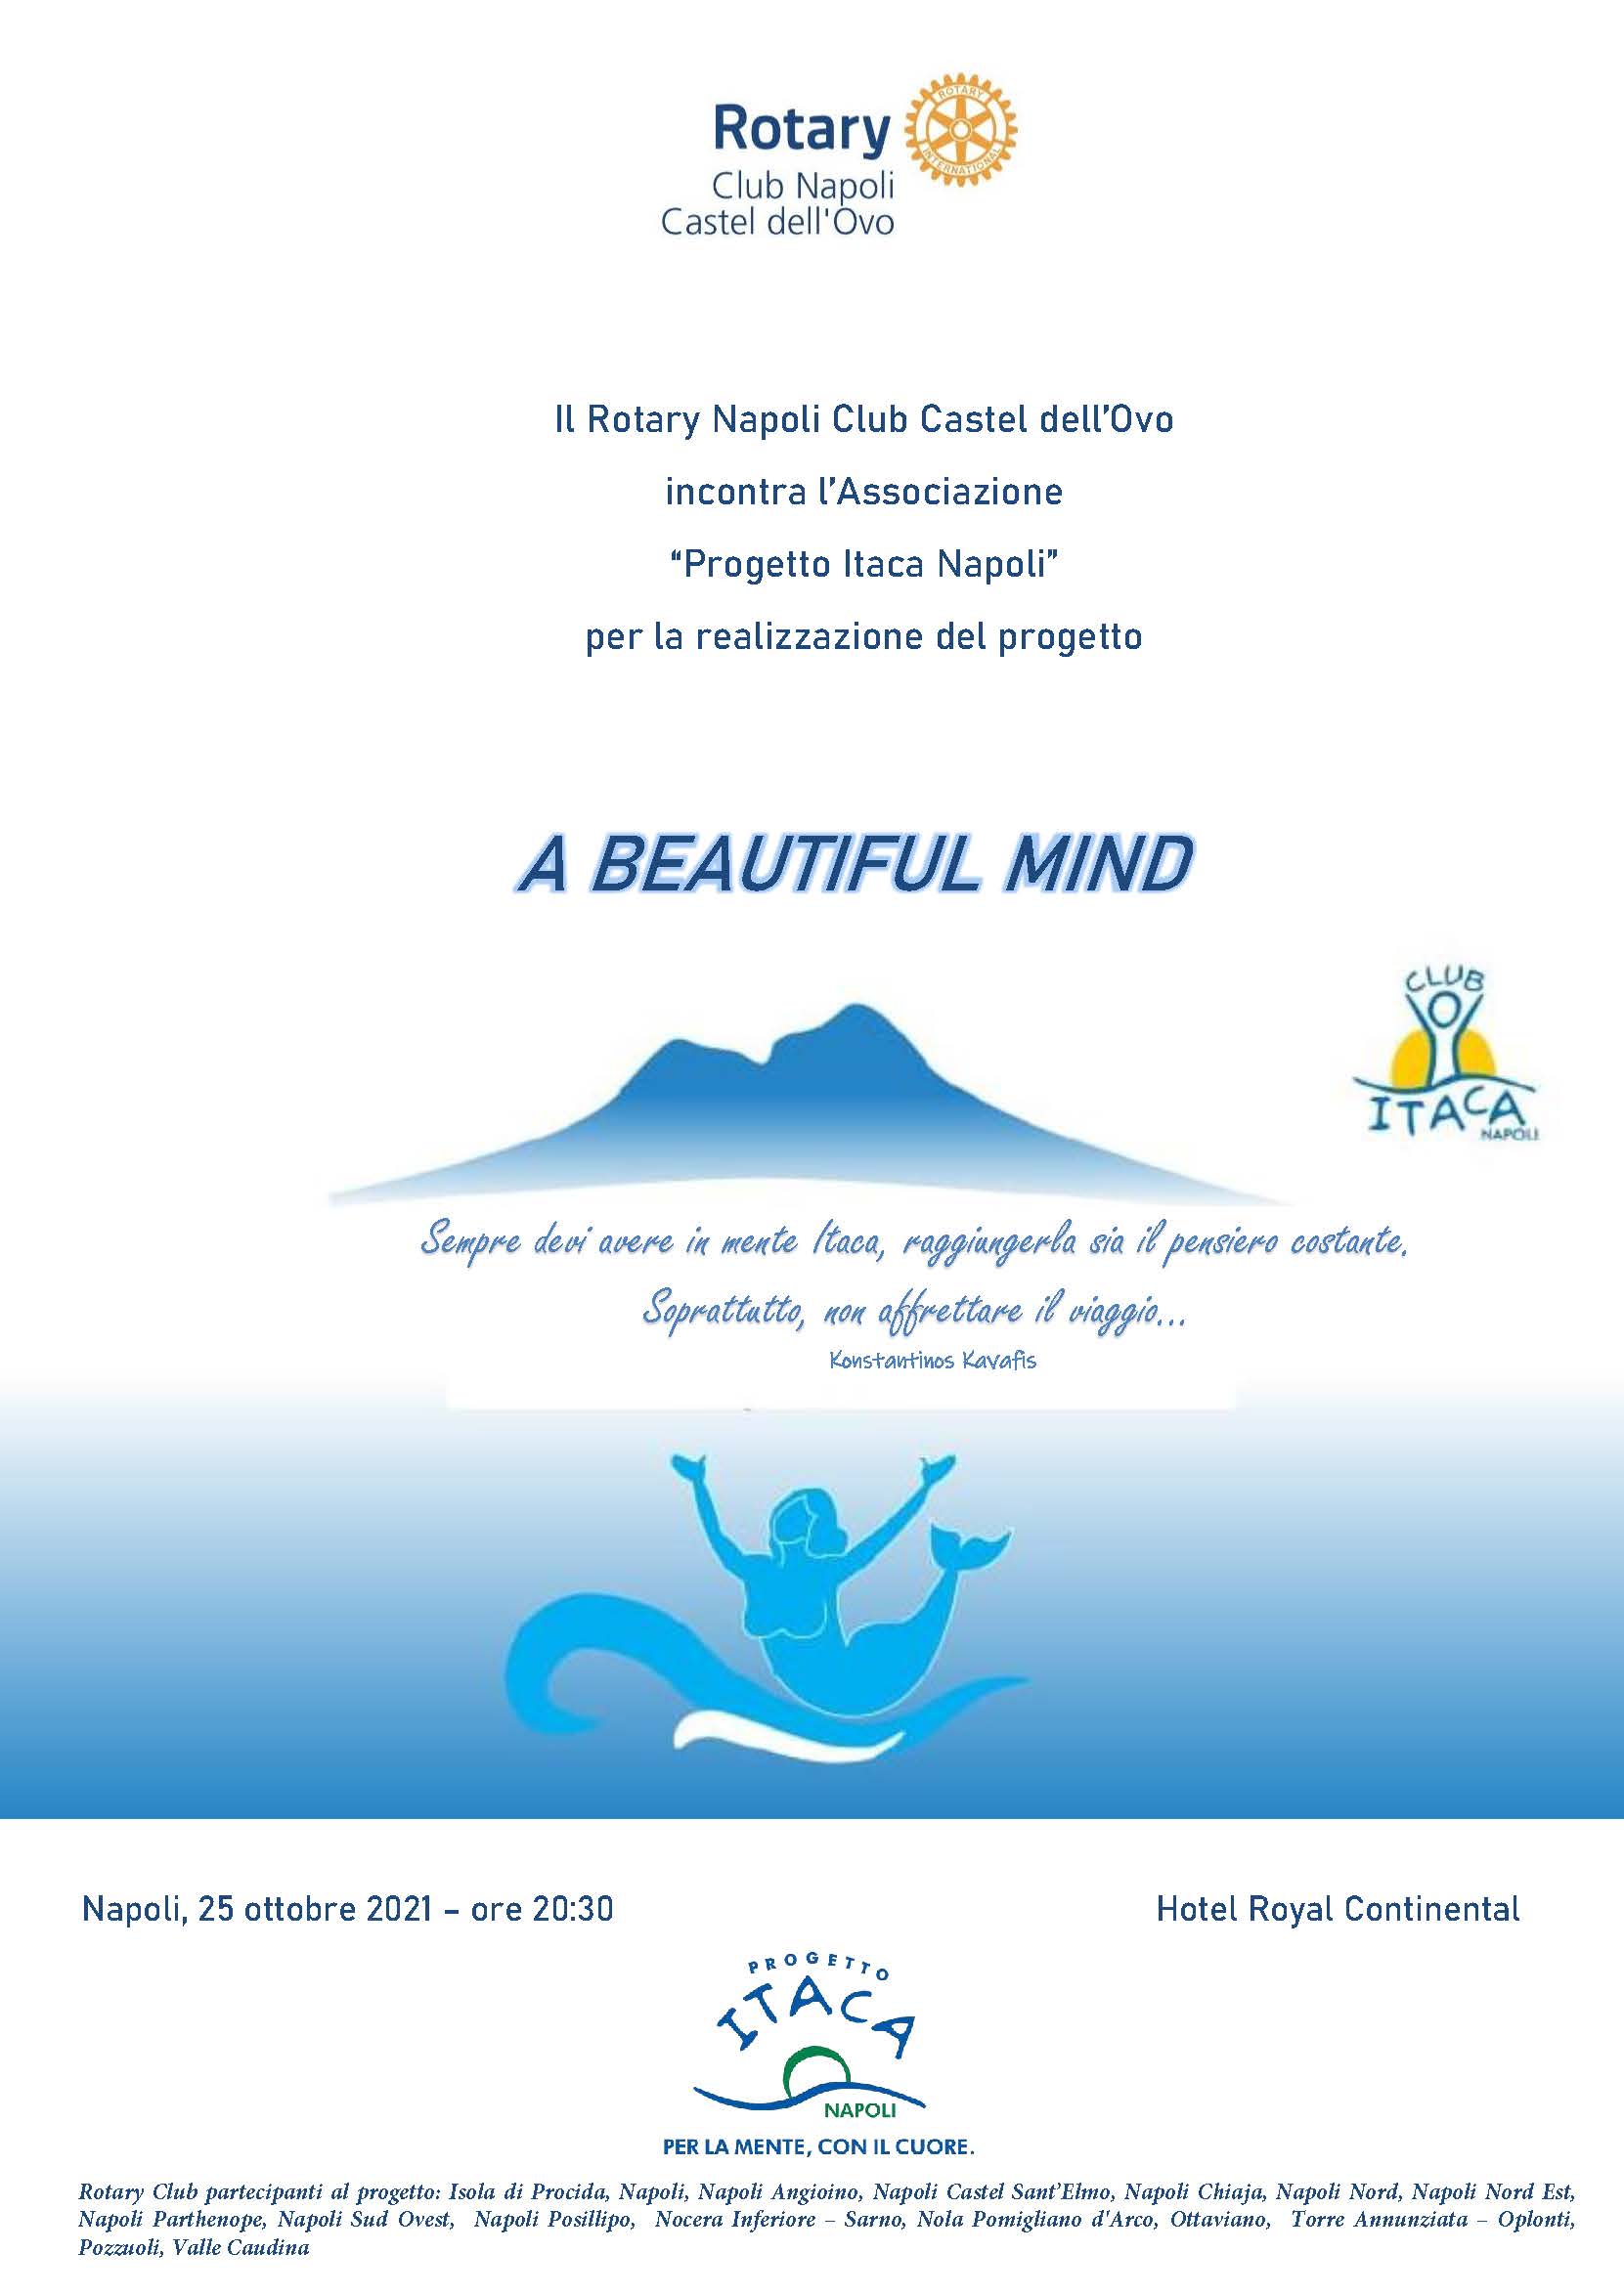 Il 25 ottobre al Rotary Club Napoli Castel dell’Ovo presentazione del progetto “A beautiful mind”